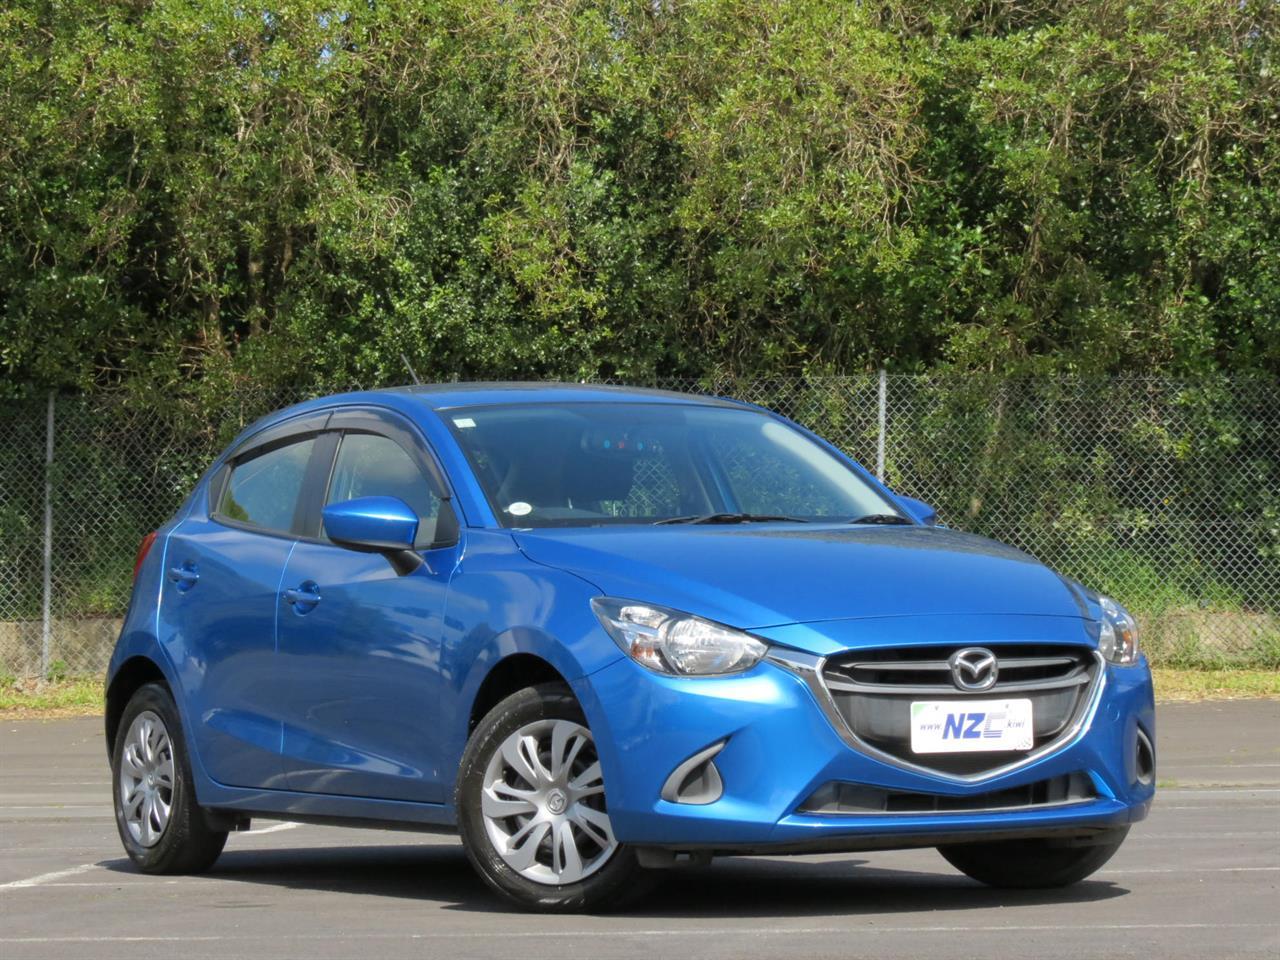 NZC best hot price for 2015 Mazda Demio in Auckland